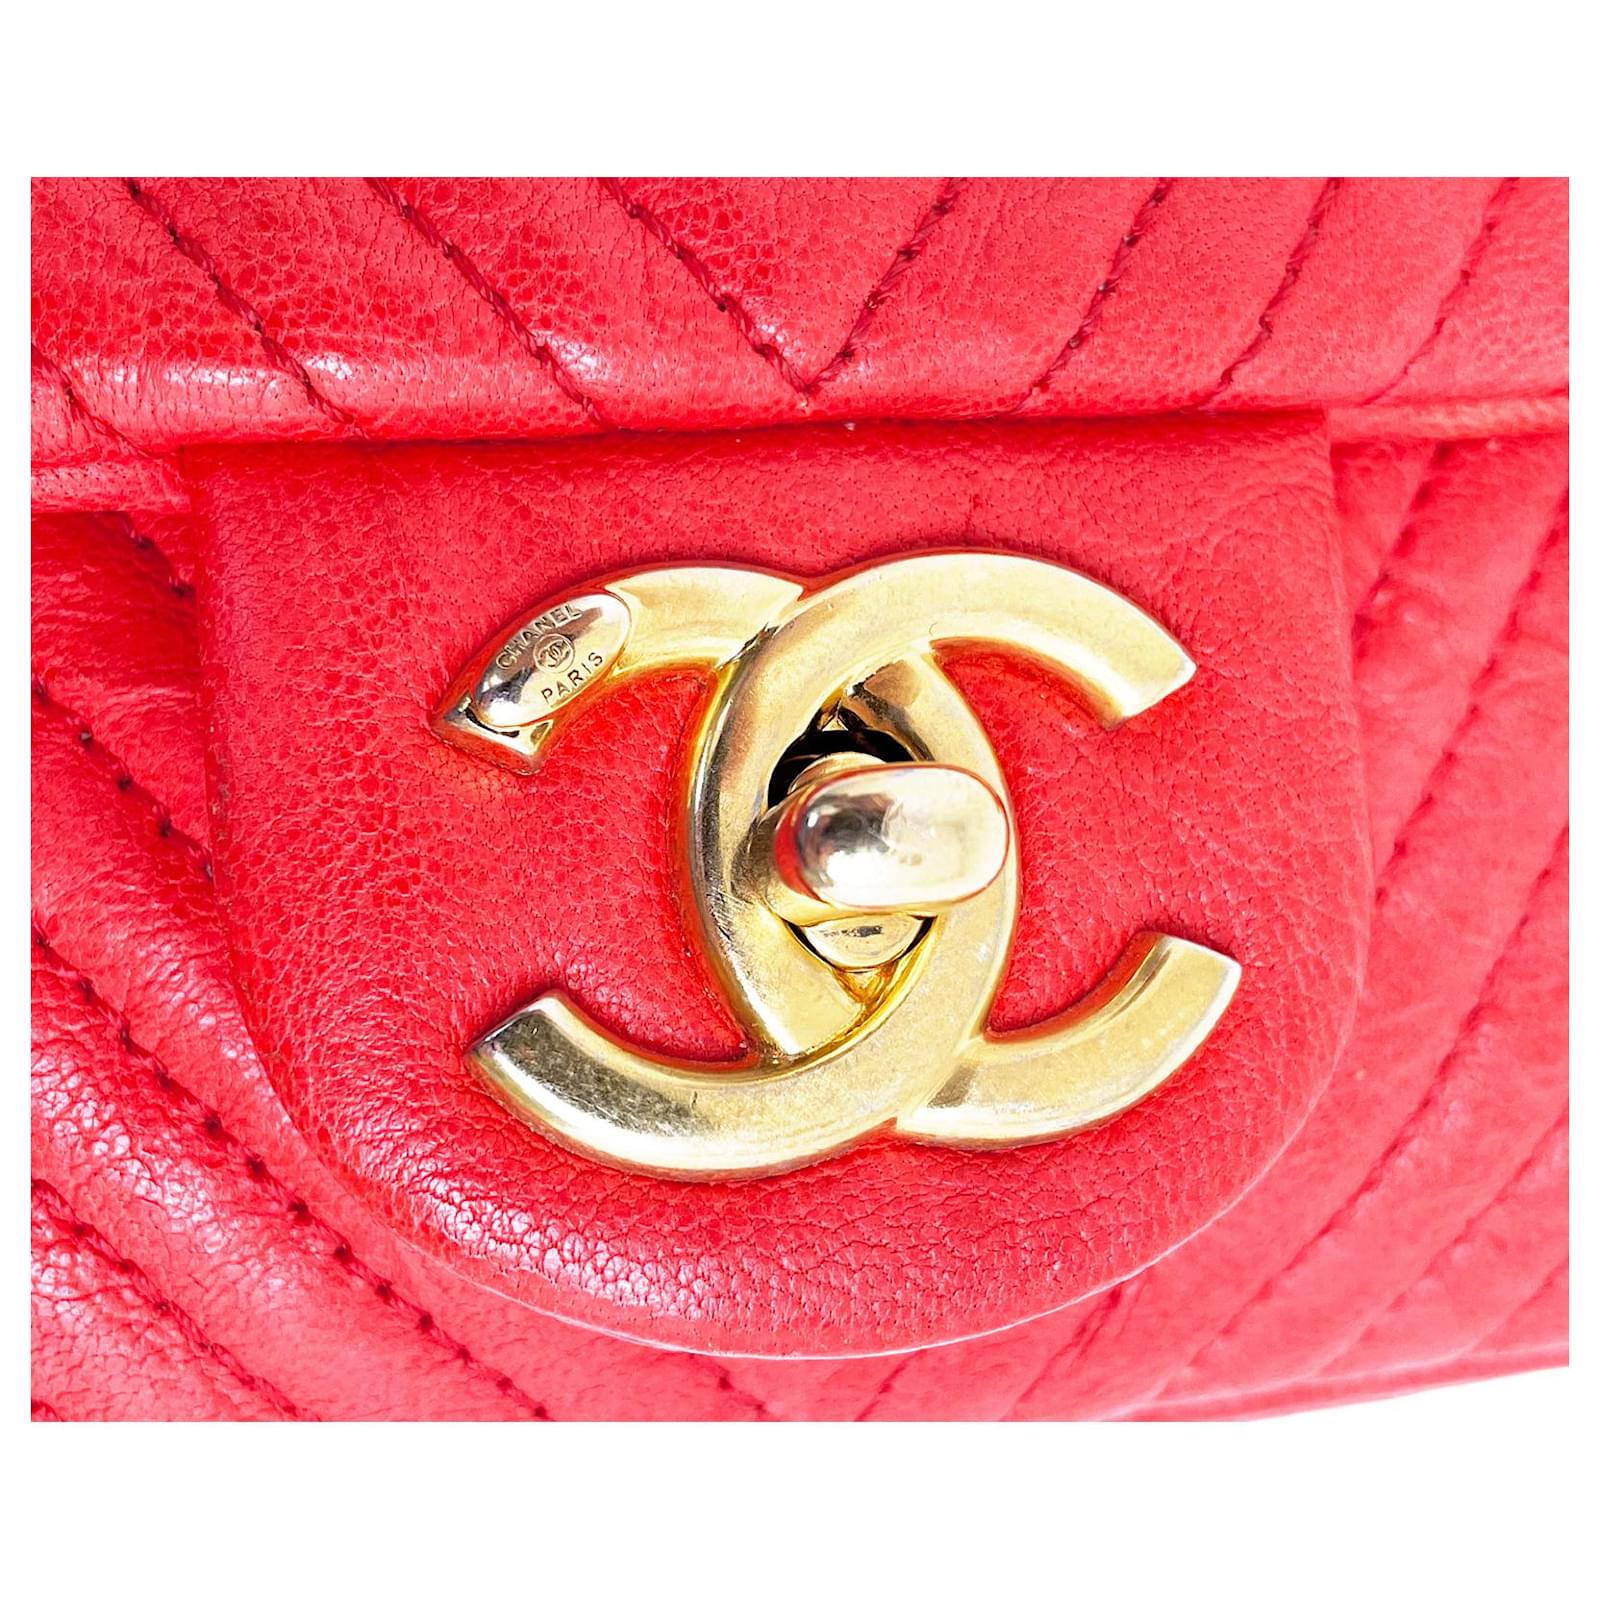 Chanel Red Chevron Wrinkled Leather Mini Rectangular Medallion